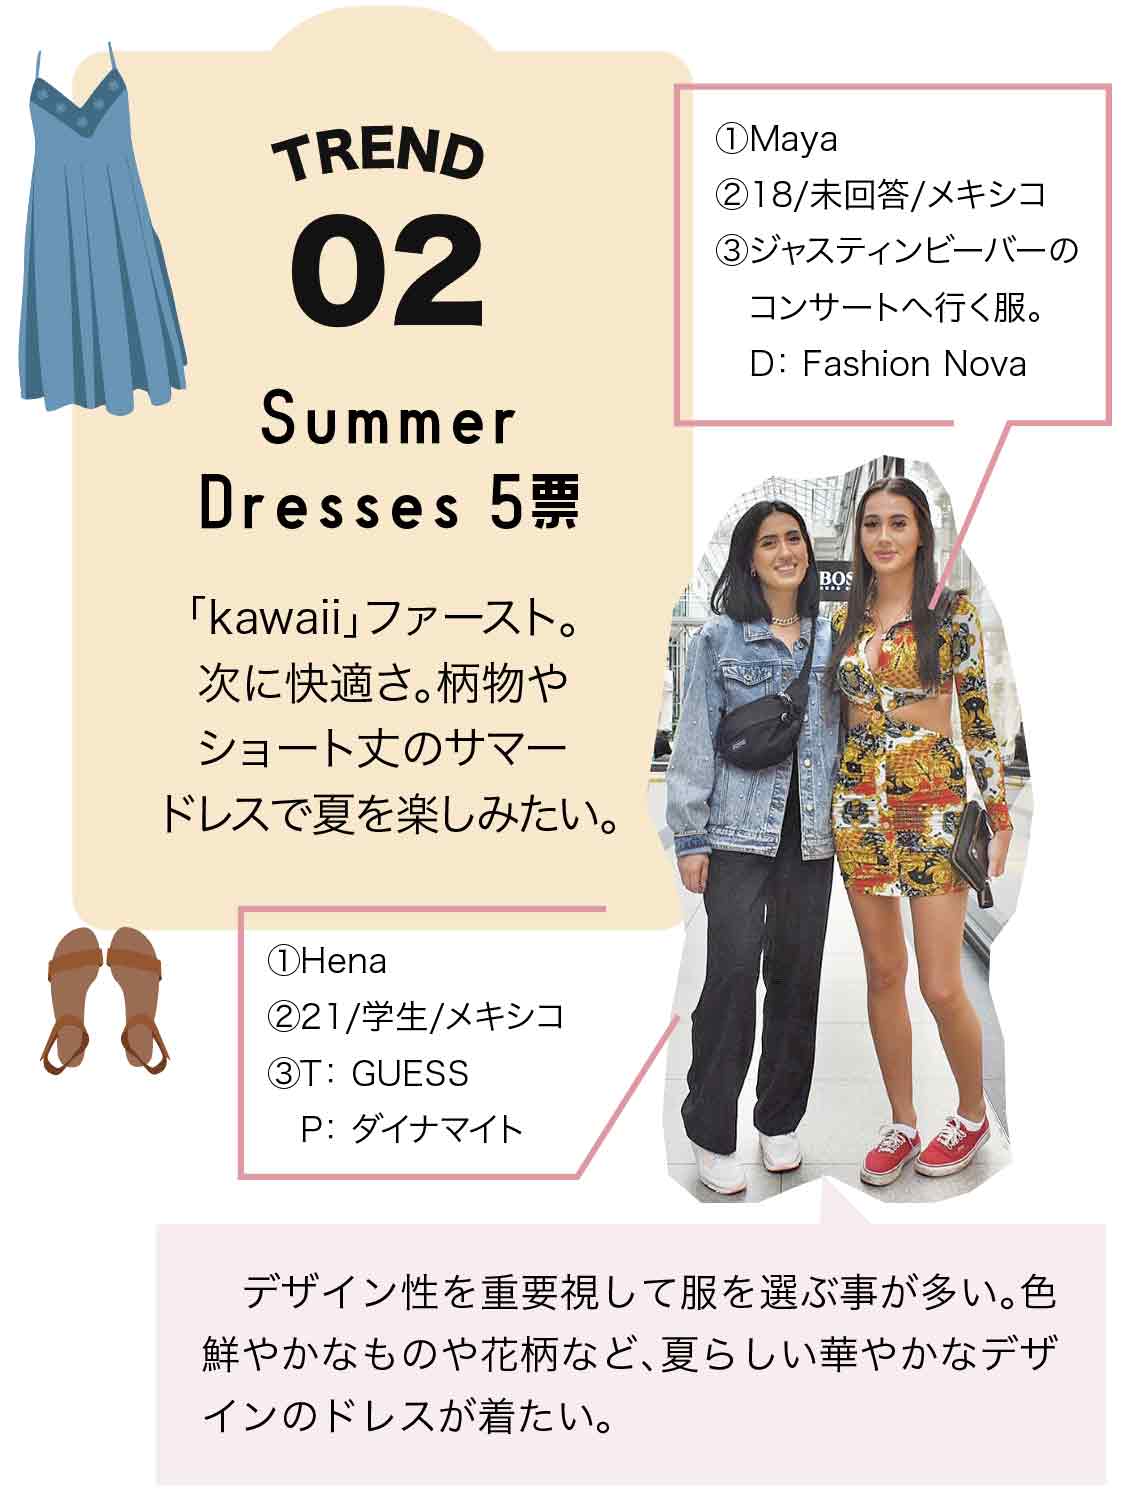 トレンド02.Summer Dresses 5票